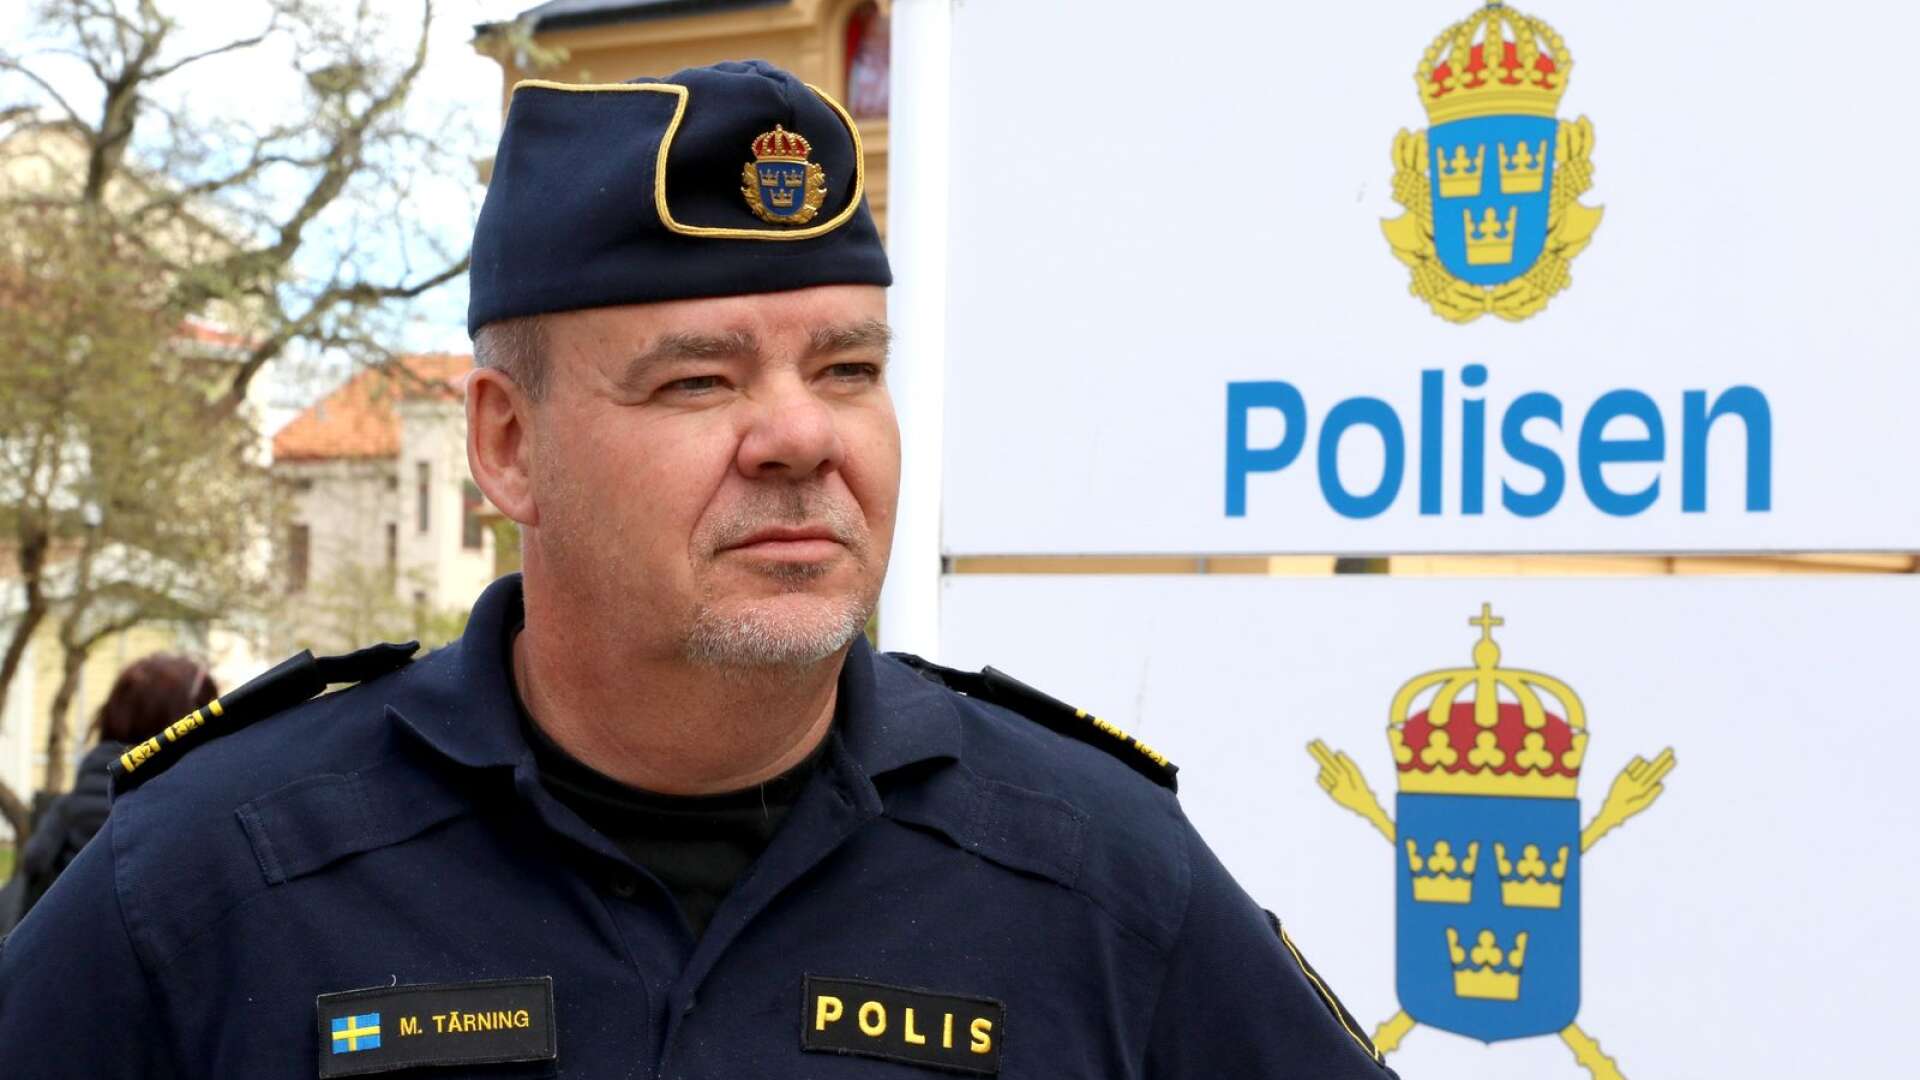 ”Vi har i Skaraborg i närtid haft flera dödsfall där vi inte kan utesluta att den farliga drogen varit en bidragande orsak” säger Morgan Tärning, biträdande chef i östra Skaraborg.